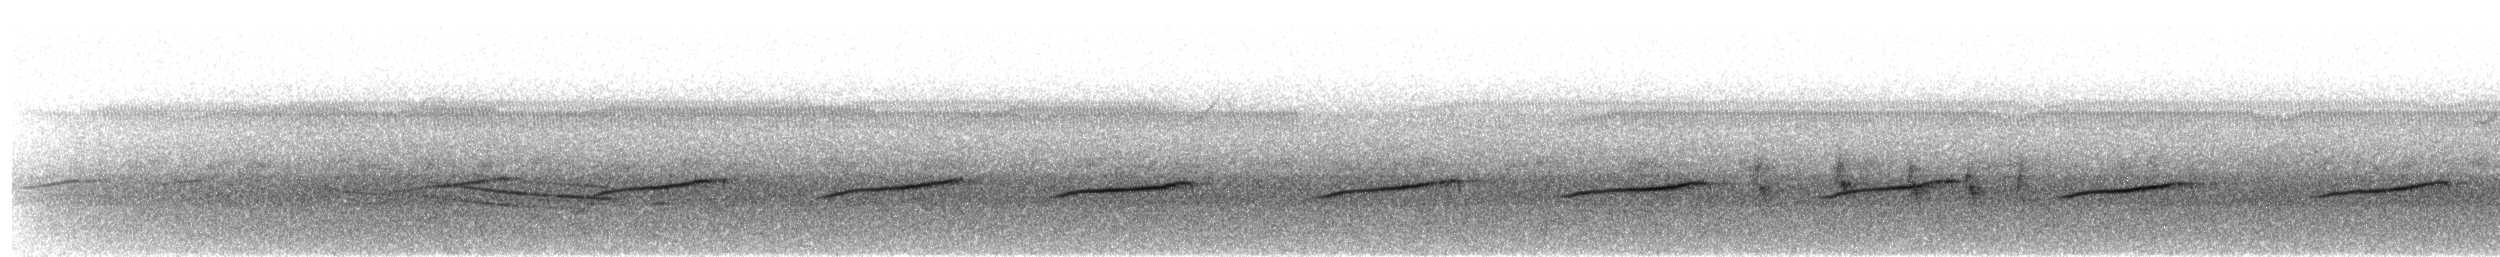 Ak Karınlı Tohumcul - ML606232911